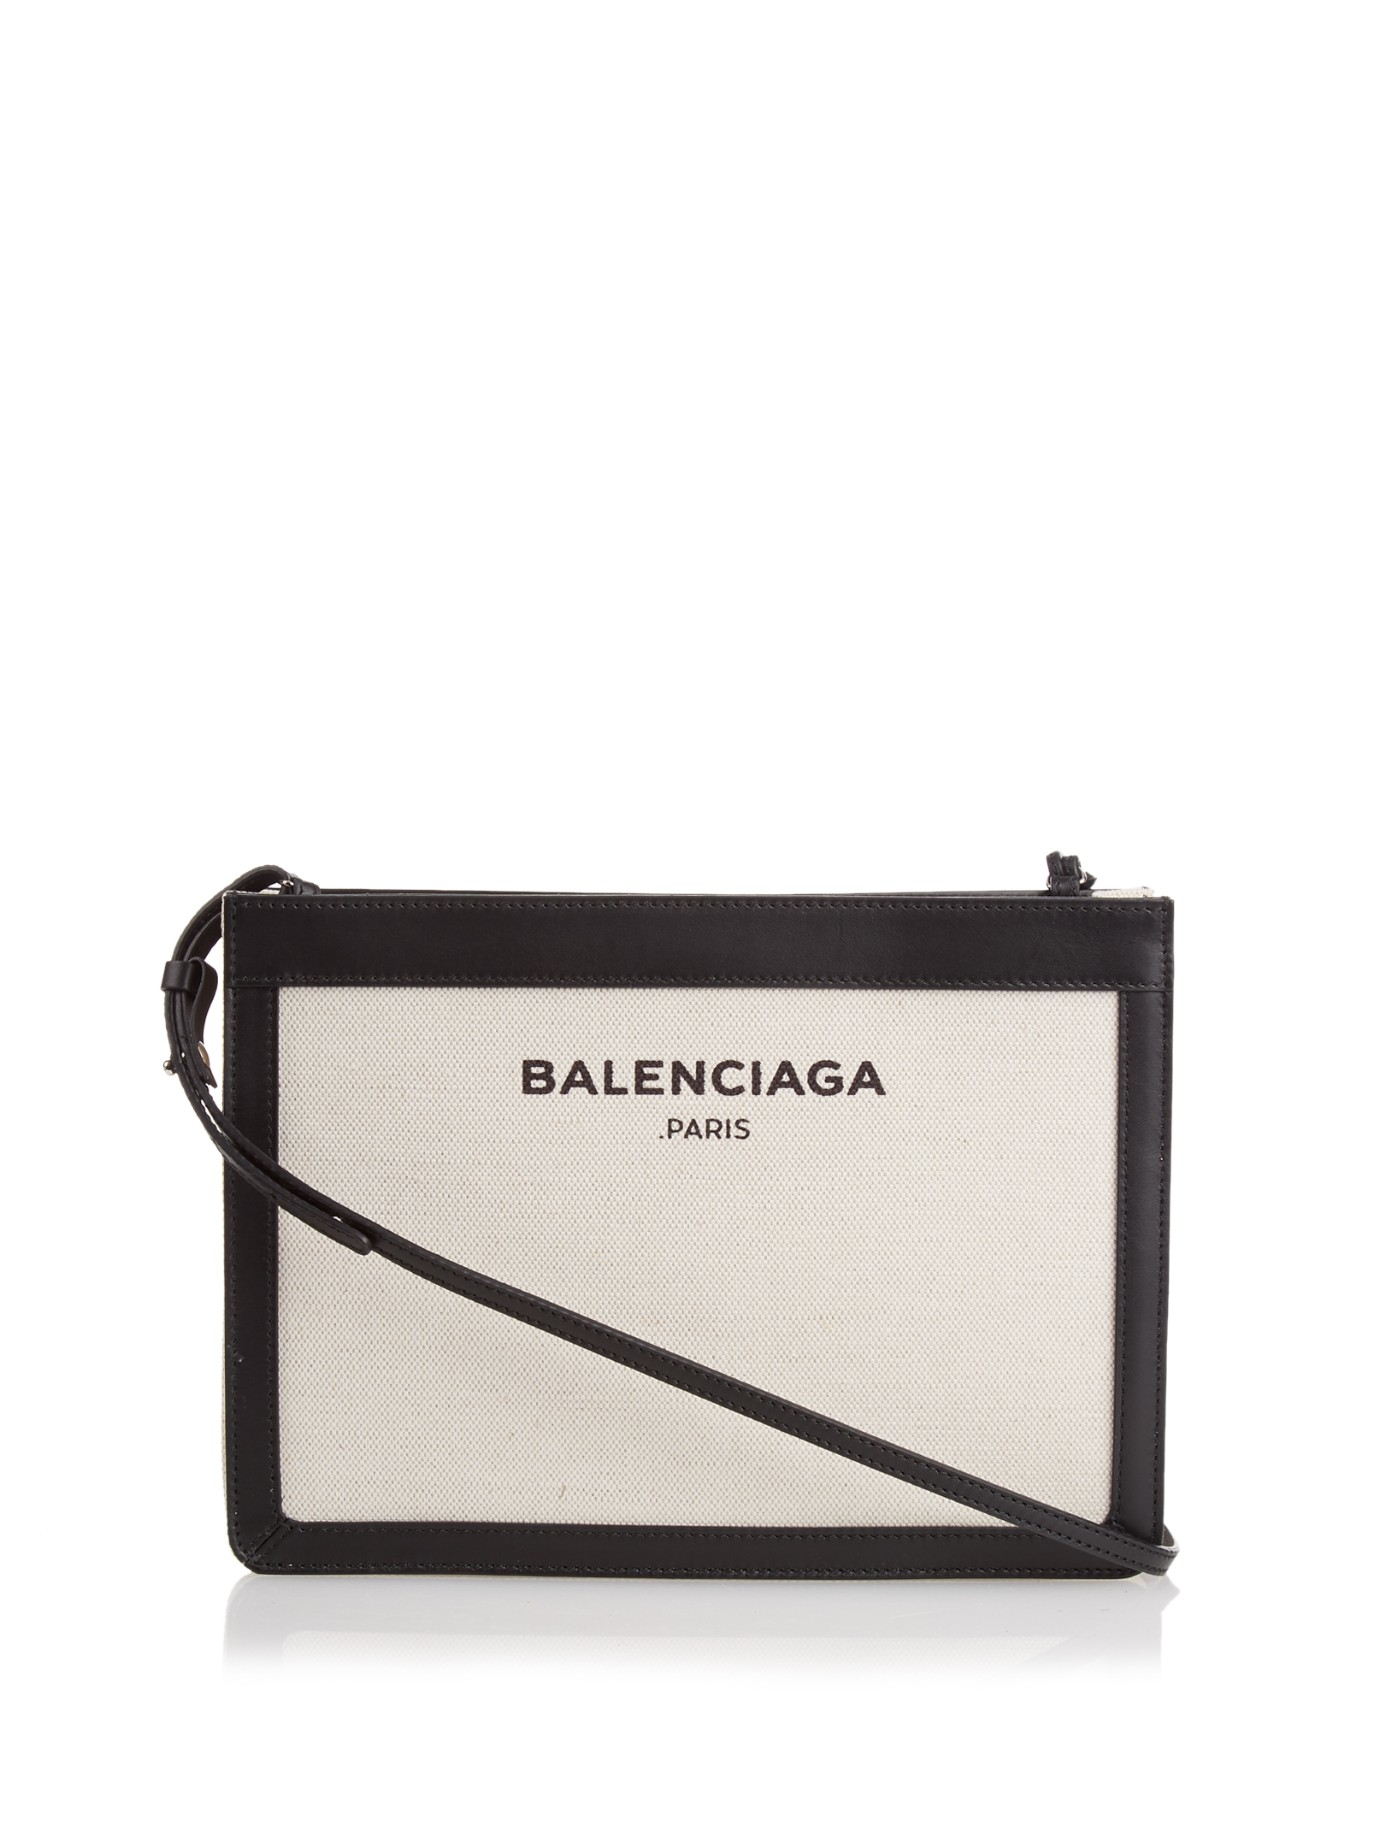 バレンシア】 Balenciaga - balenciaga cross body の通販 by 服屋｜バレンシアガならラクマ なので -  mcmc.gr